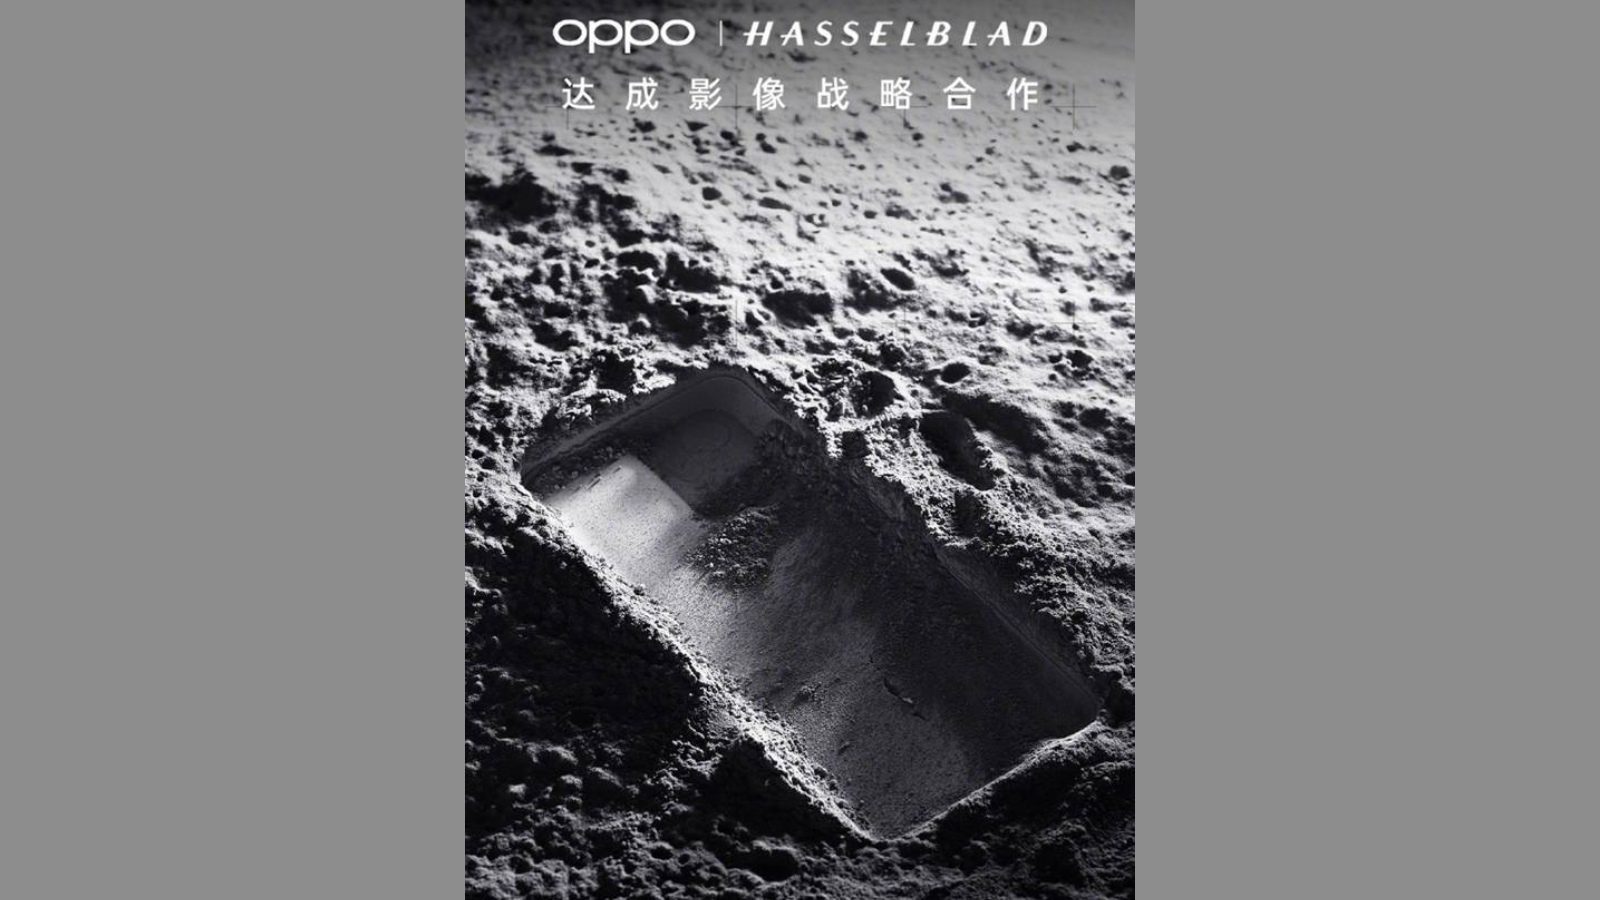 OPPO объявляет о трехлетнем партнерстве с Hasselblad в области мобильной обработки изображений